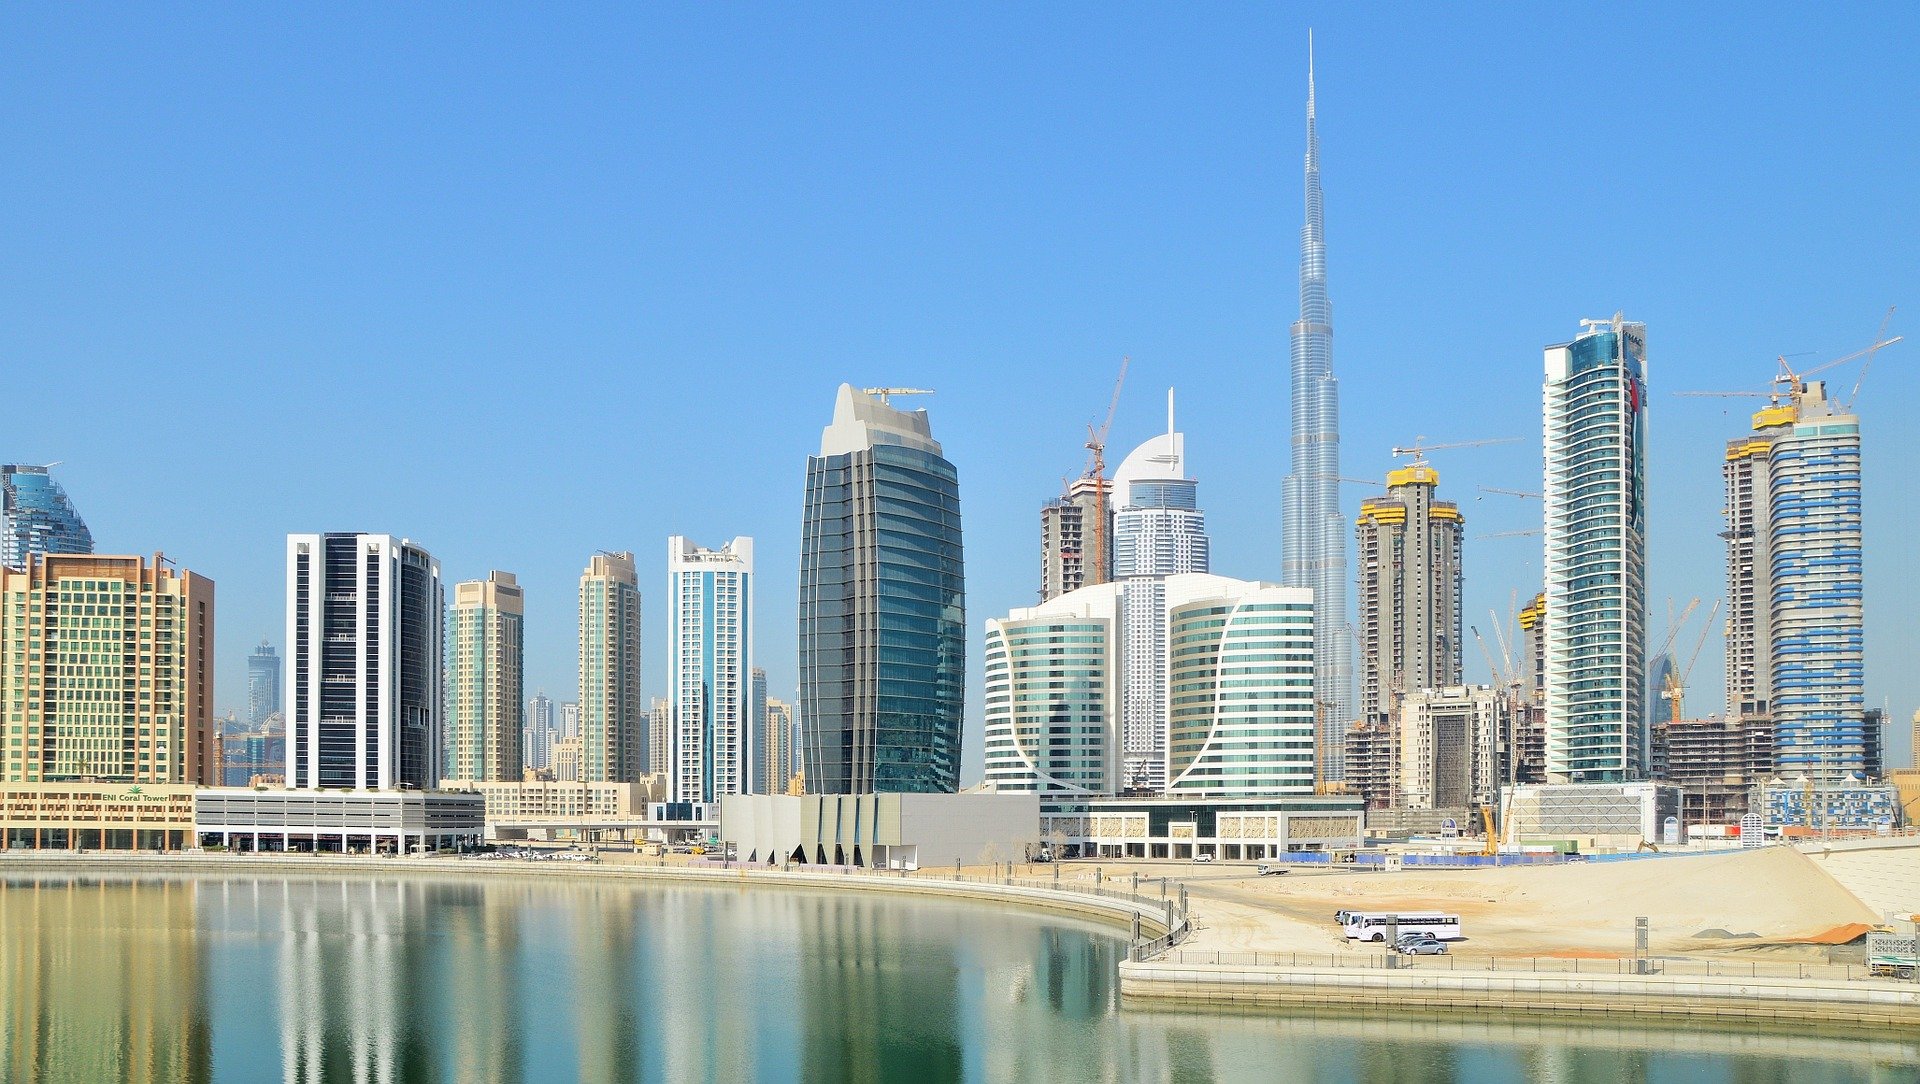 L'architecture et la modernité sont l'un des principaux attraits pour les personnes souhaitant étudier et vivre à Dubaï.